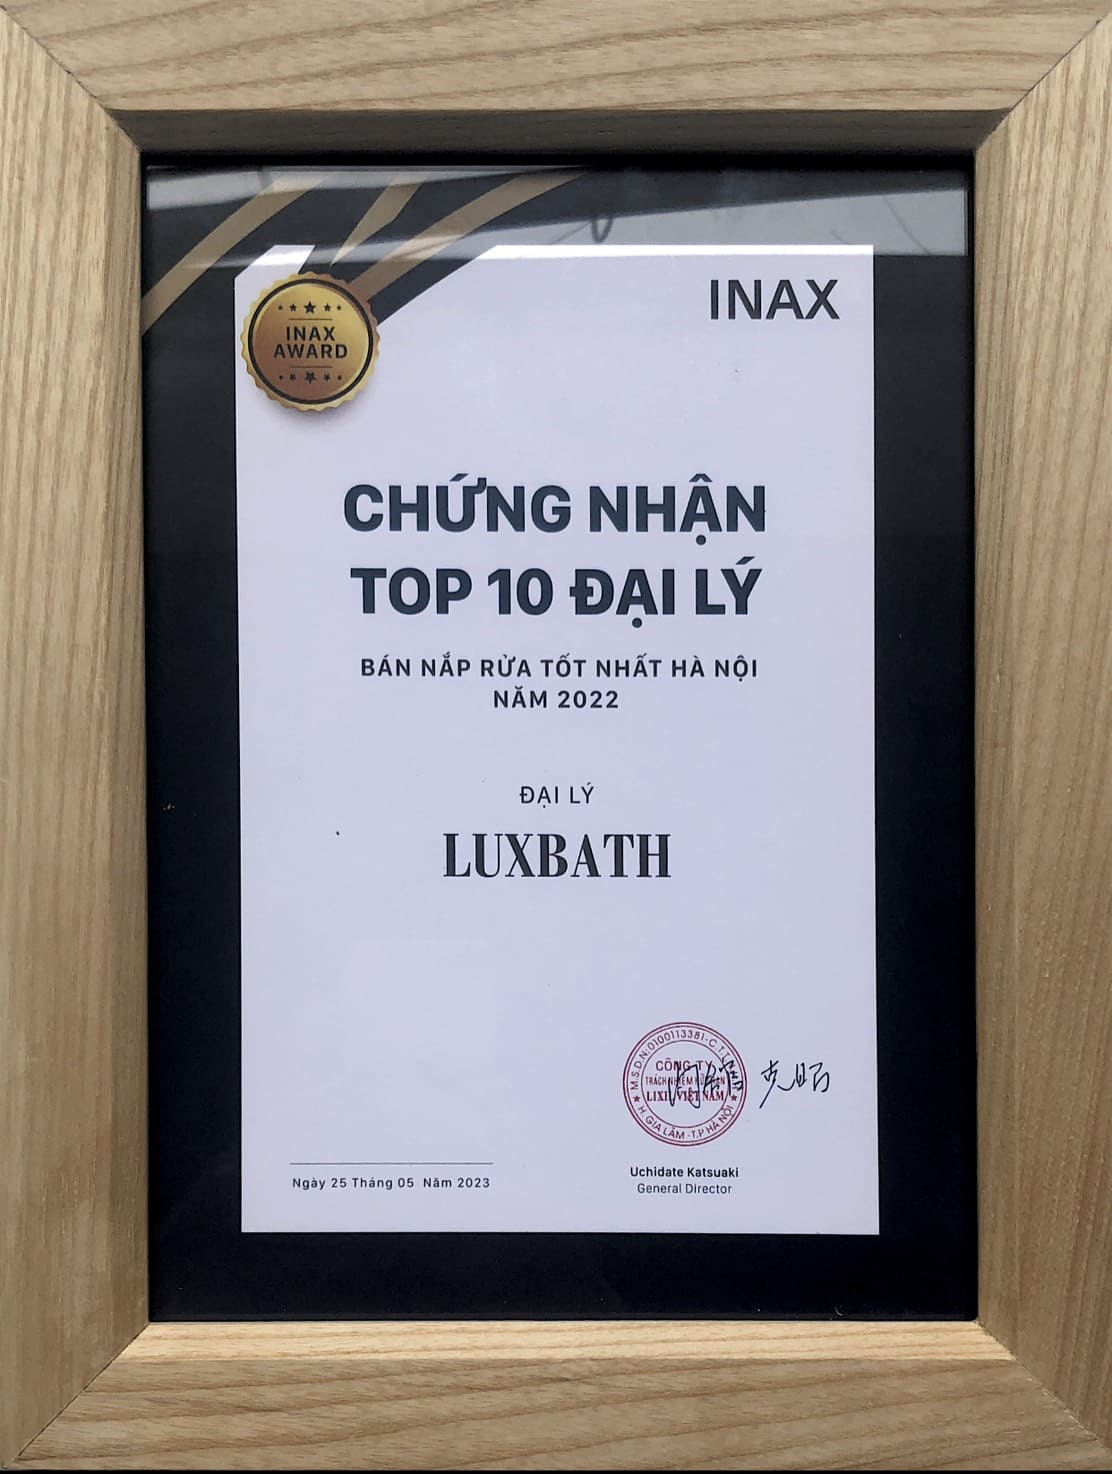 Luxbath được Inax vinh danh là đại lý bán nắp rửa tốt nhất tại Hà Nội